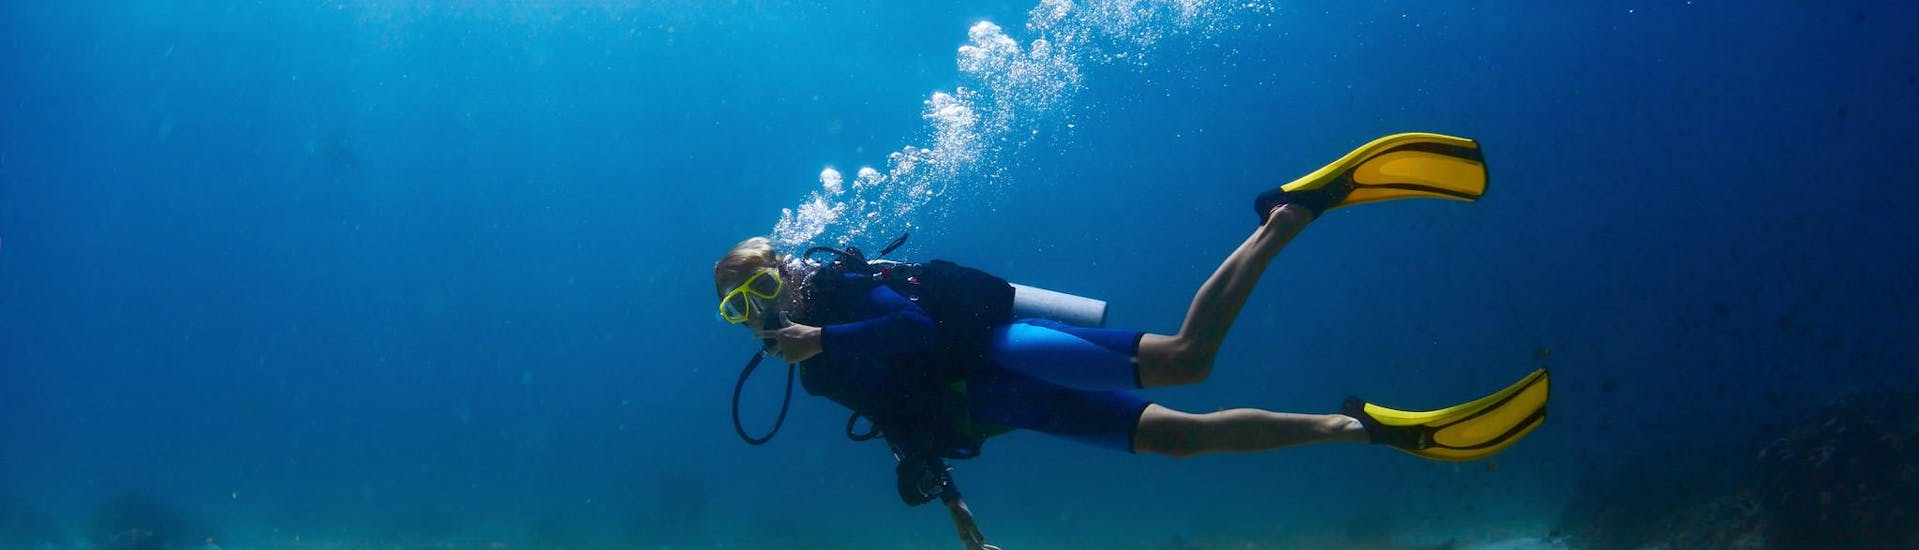 Un uomo che guarda la telecamera durante un'attività subacquea intorno all'isola.